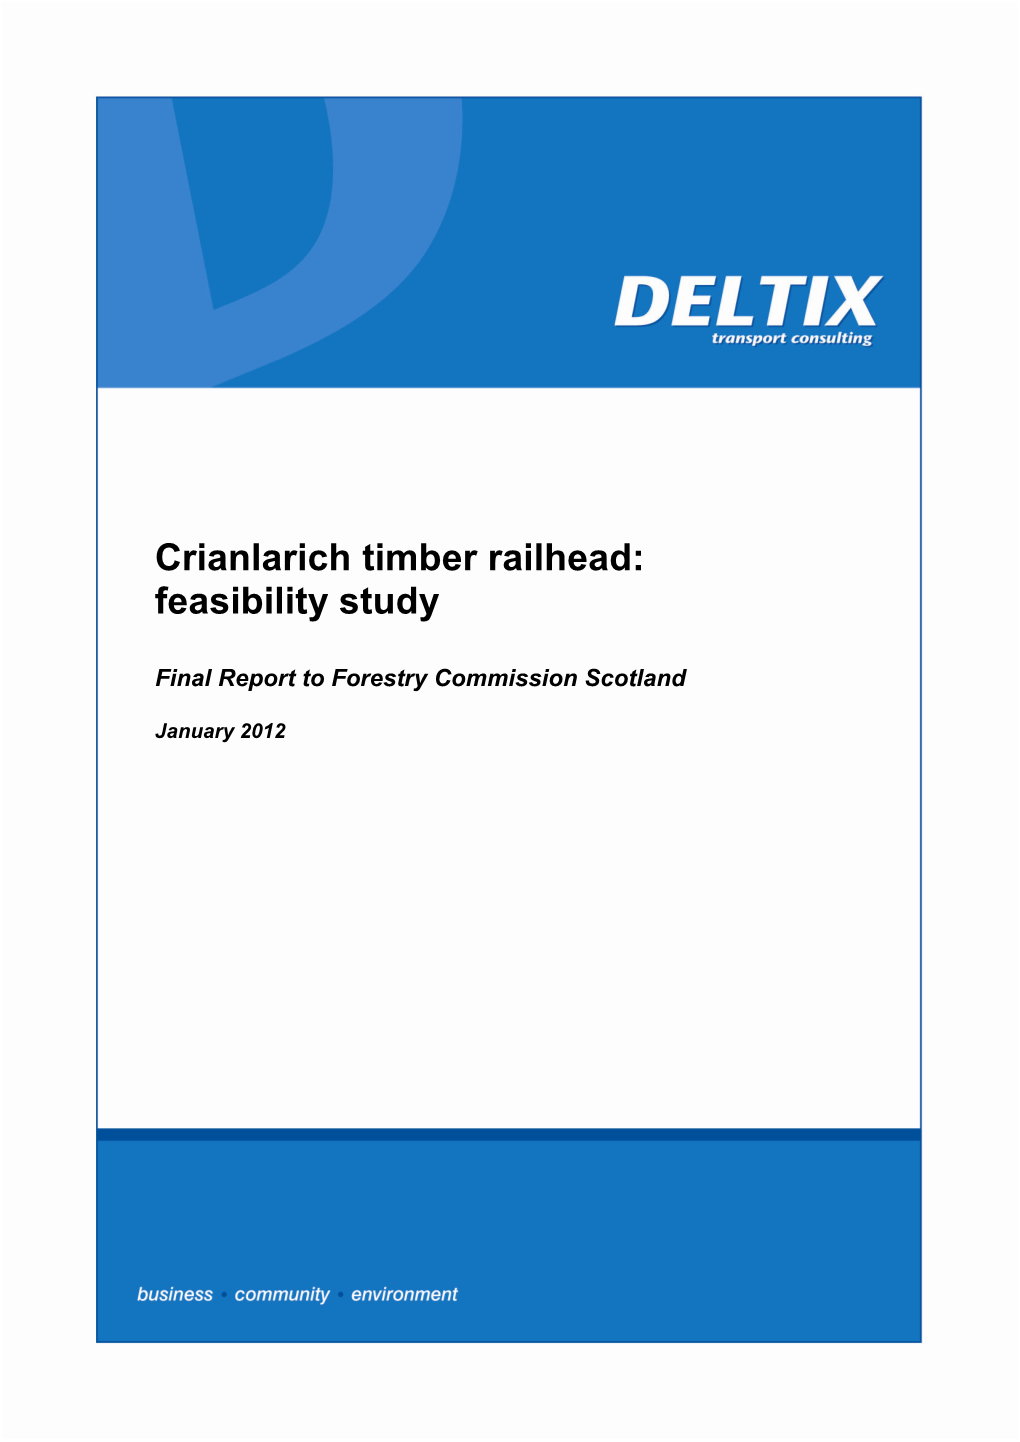 Crianlarich Timber Railhead: Feasibility Study